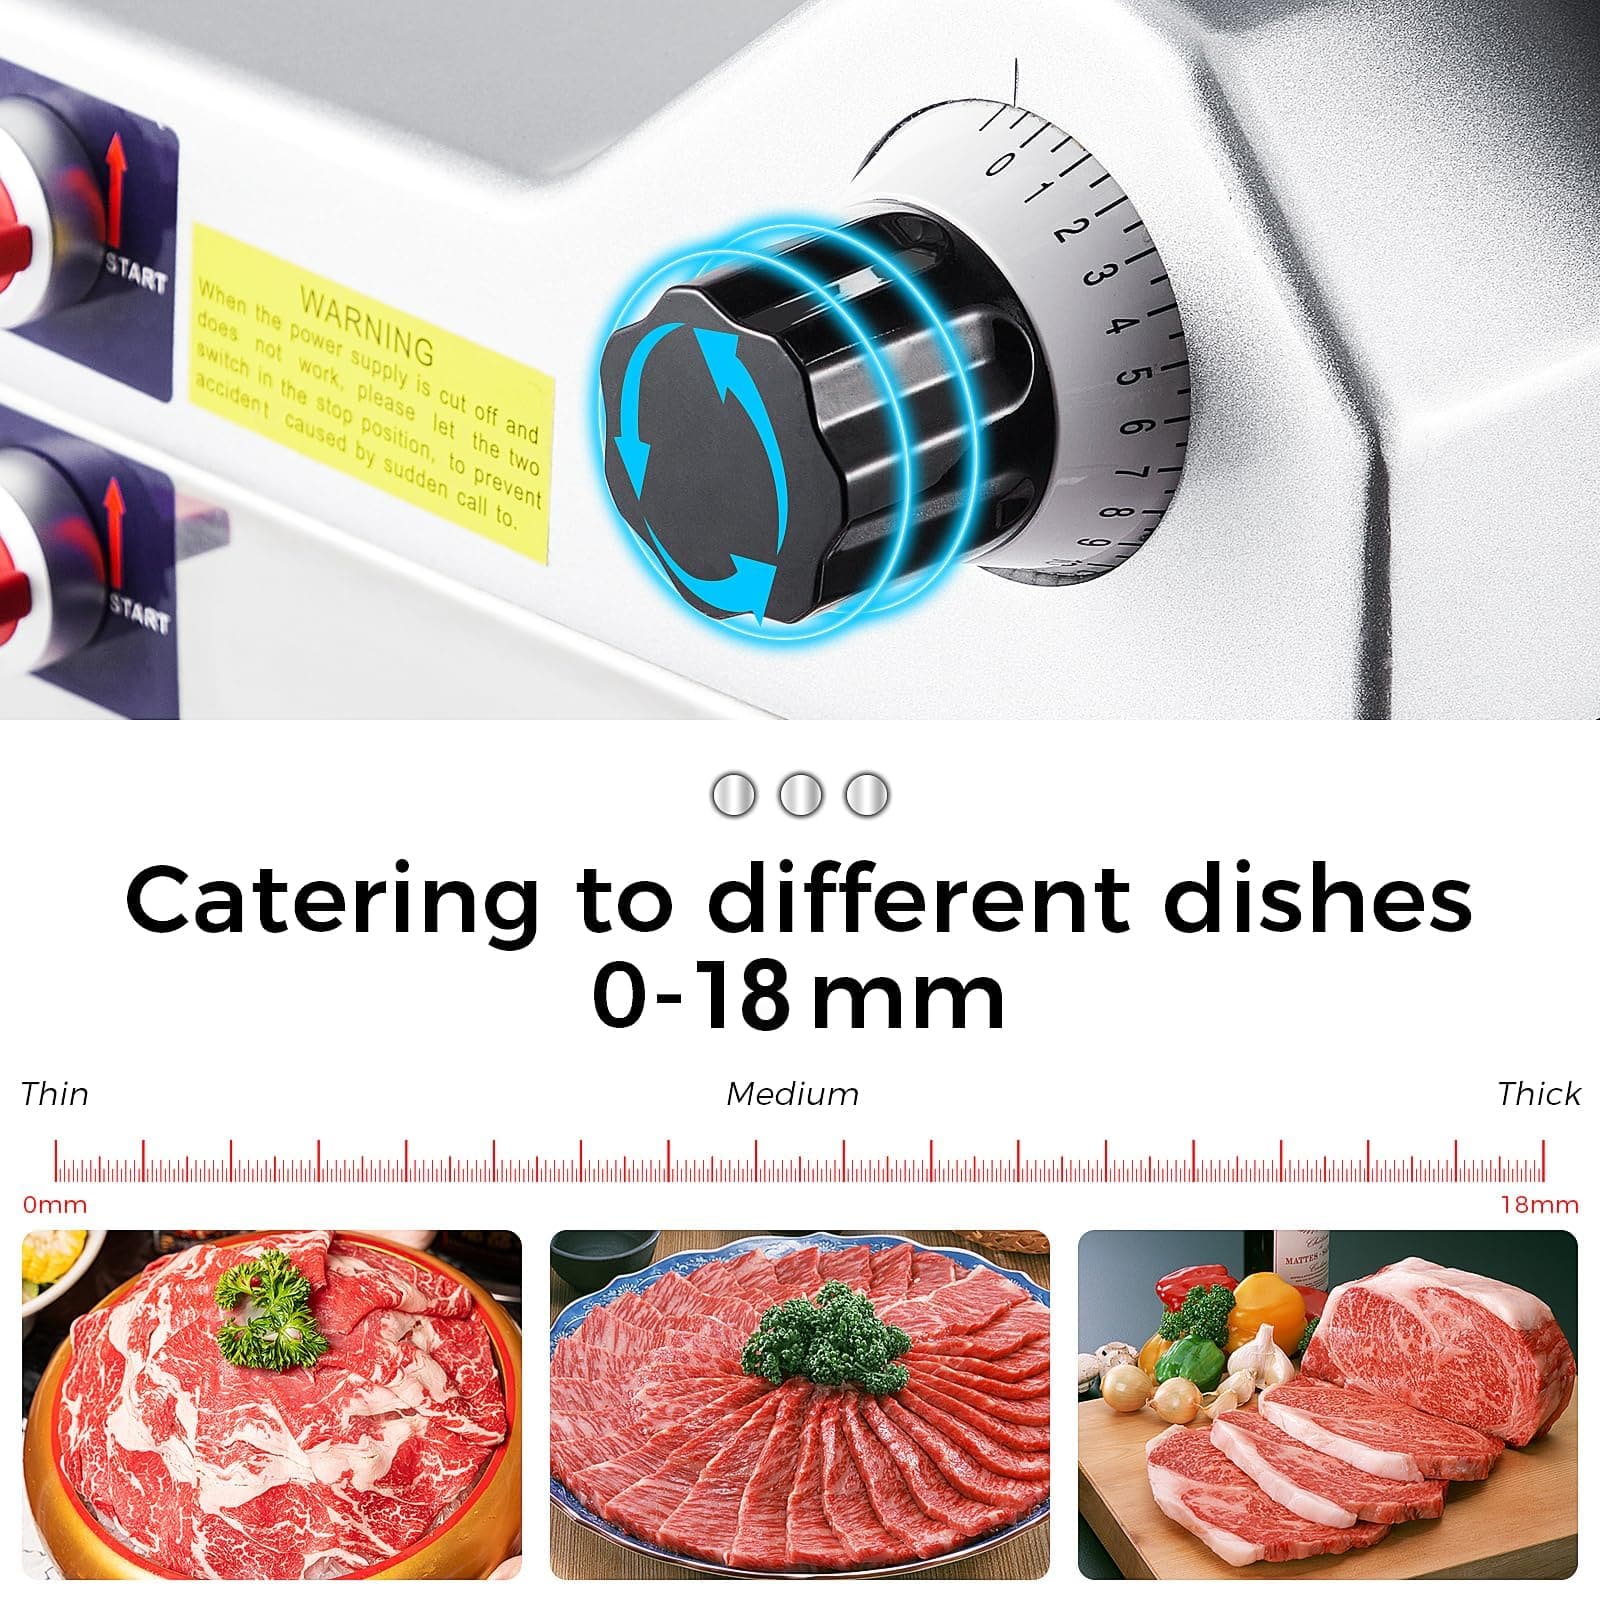 12" Electric Meat Slicer, 0-18mm Adjust, Home & Commercial